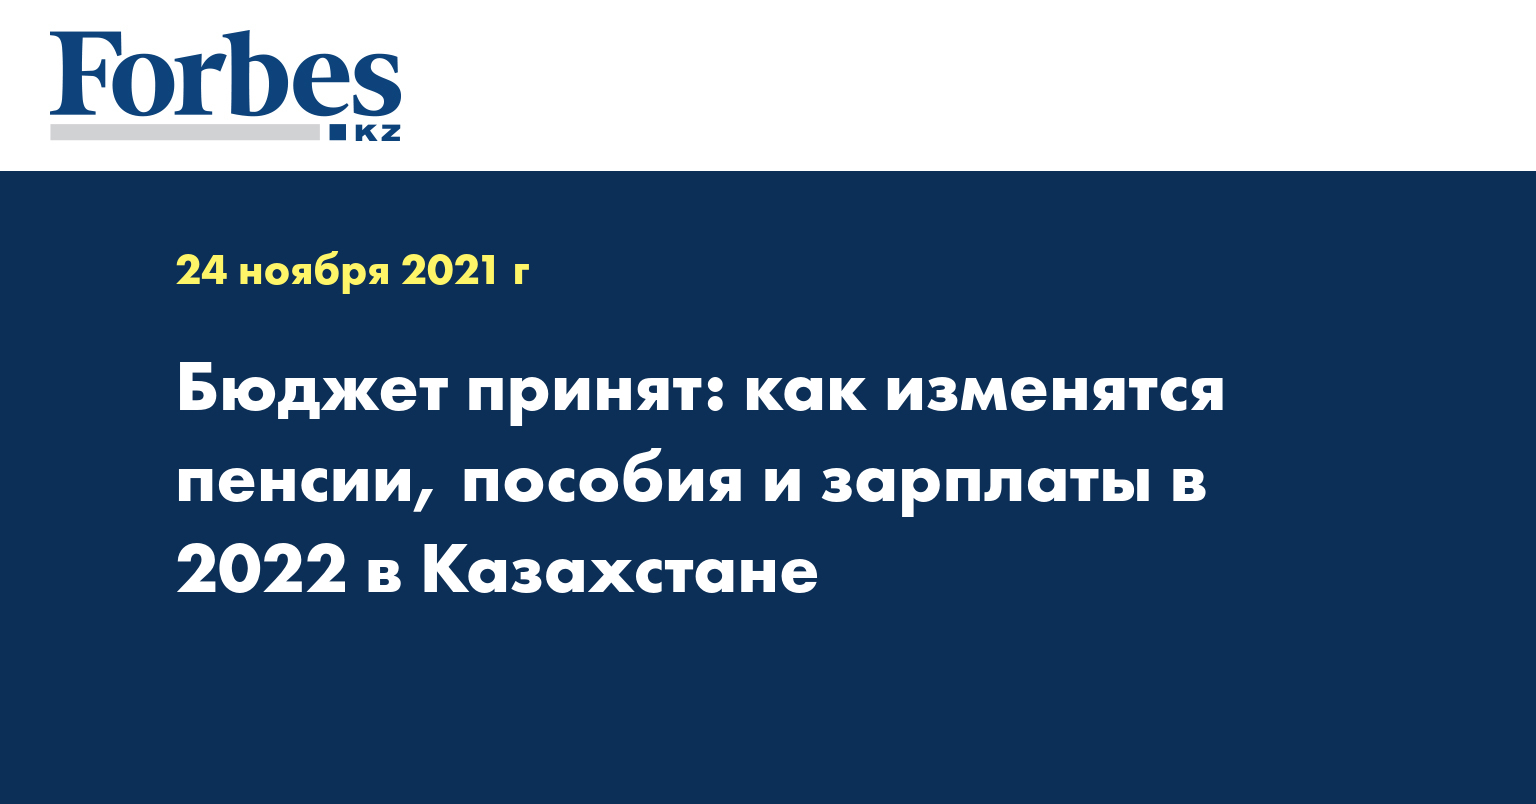 Бюджет принят: как изменятся пенсии, пособия и зарплаты в 2022 в Казахстане